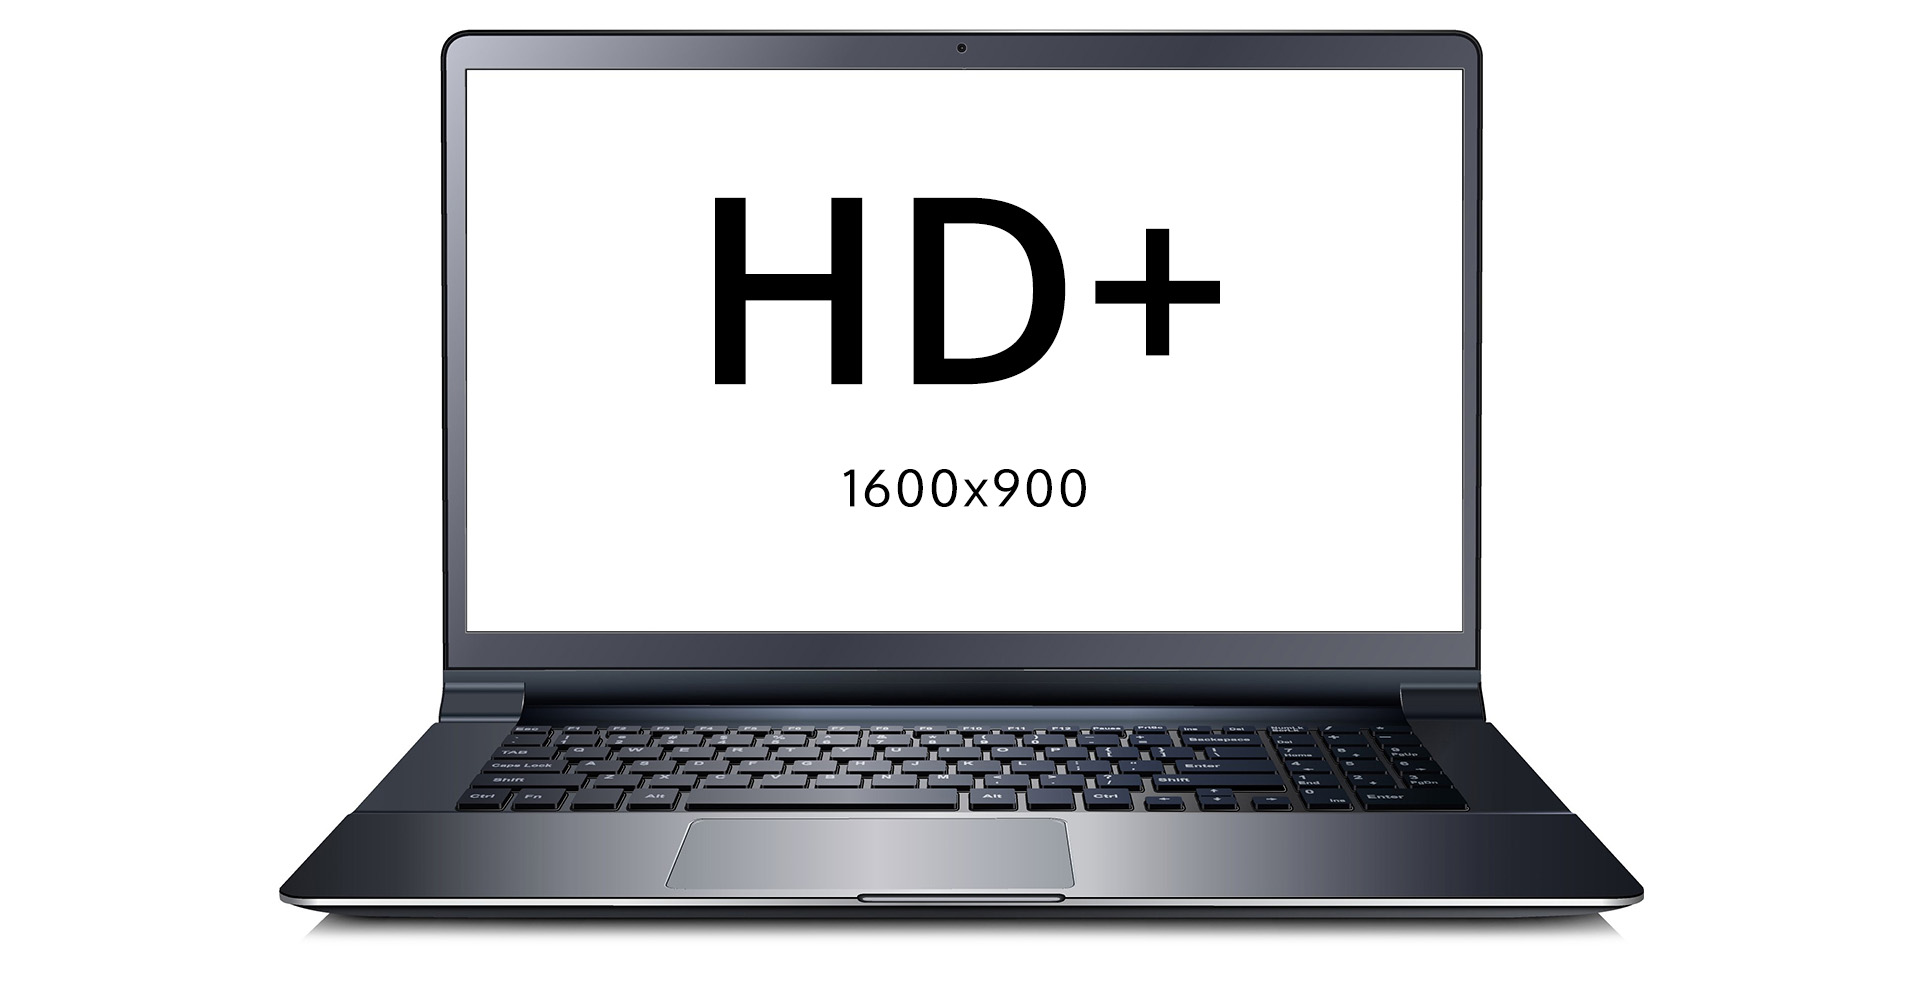 Lenovo L540 2950M 8GB 320GB HDD Windows 10 Professional HD+ 1600x900 raiška